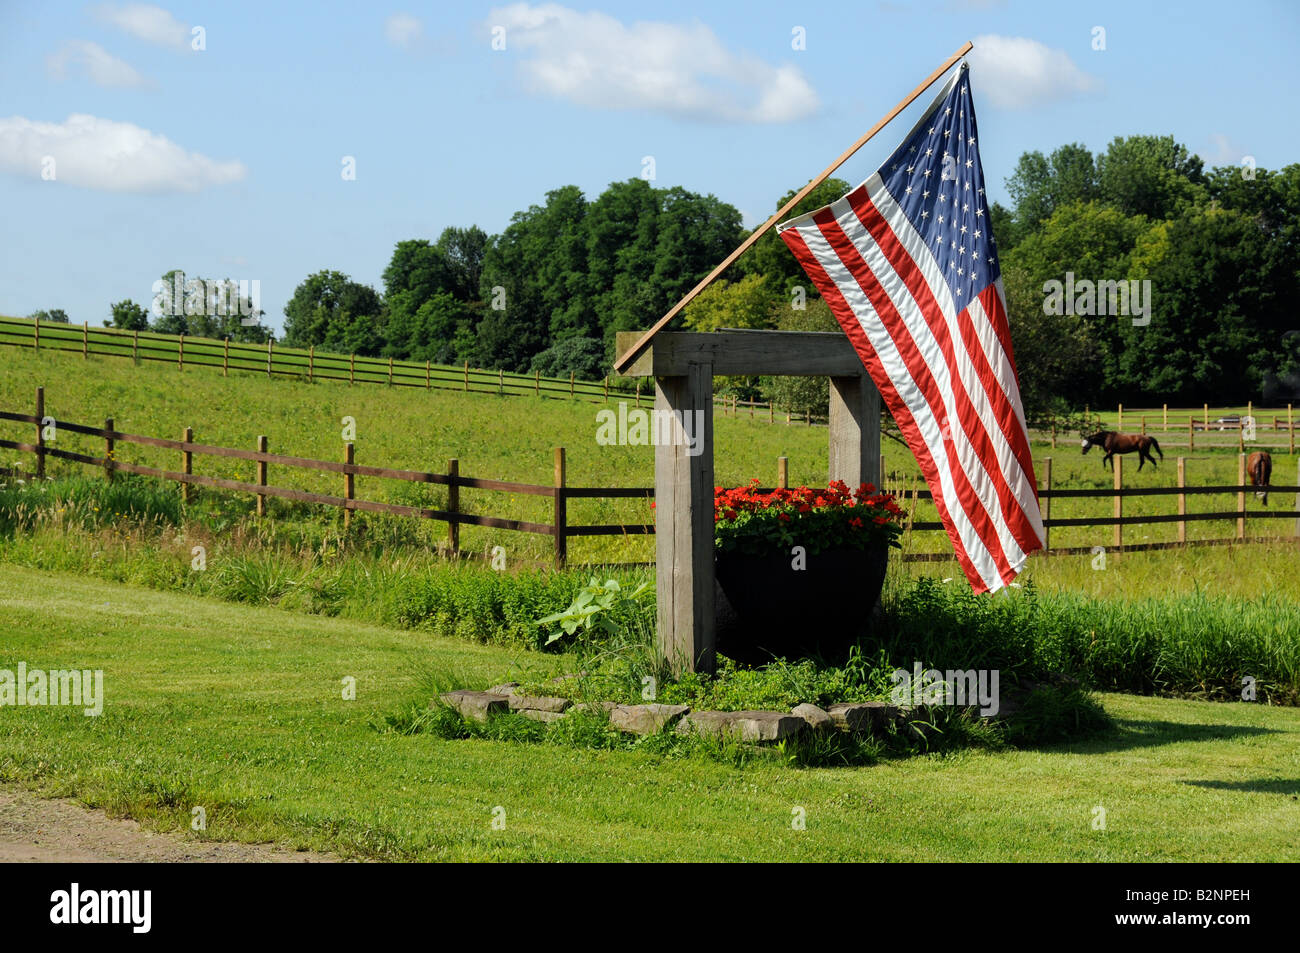 Die Stars And Stripes fliegen stolz am Tor zu einer Ranch im US-Bundesstaat, NY. Stockfoto